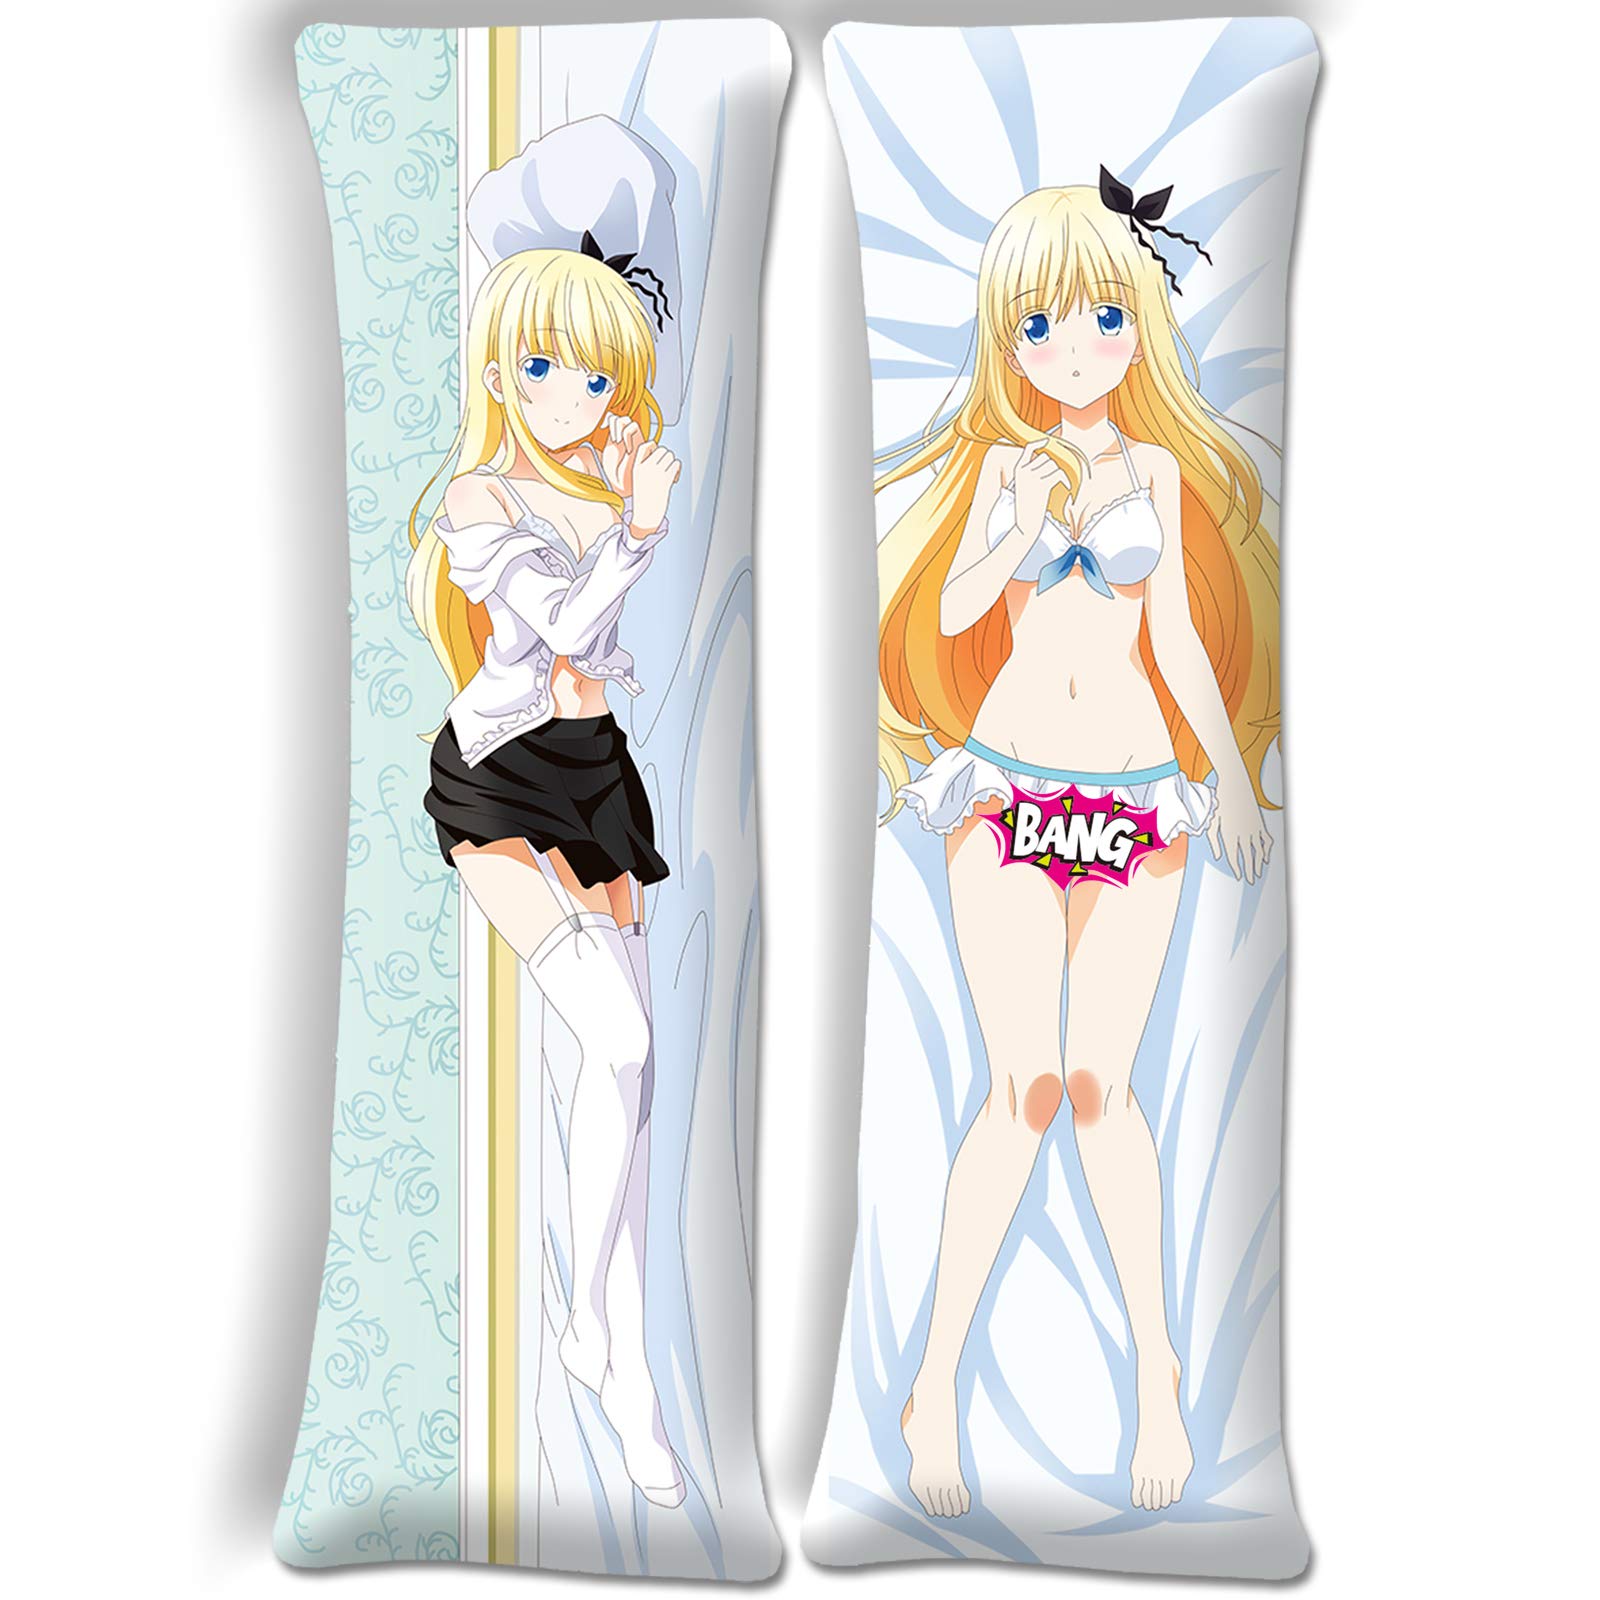 SHAWINGO Kishuku Gakkou No Juliet Juliet Persia Body Pillow Pillowcase 62.9x19.6in Anime Body Pillows Covers Two Way Tricot